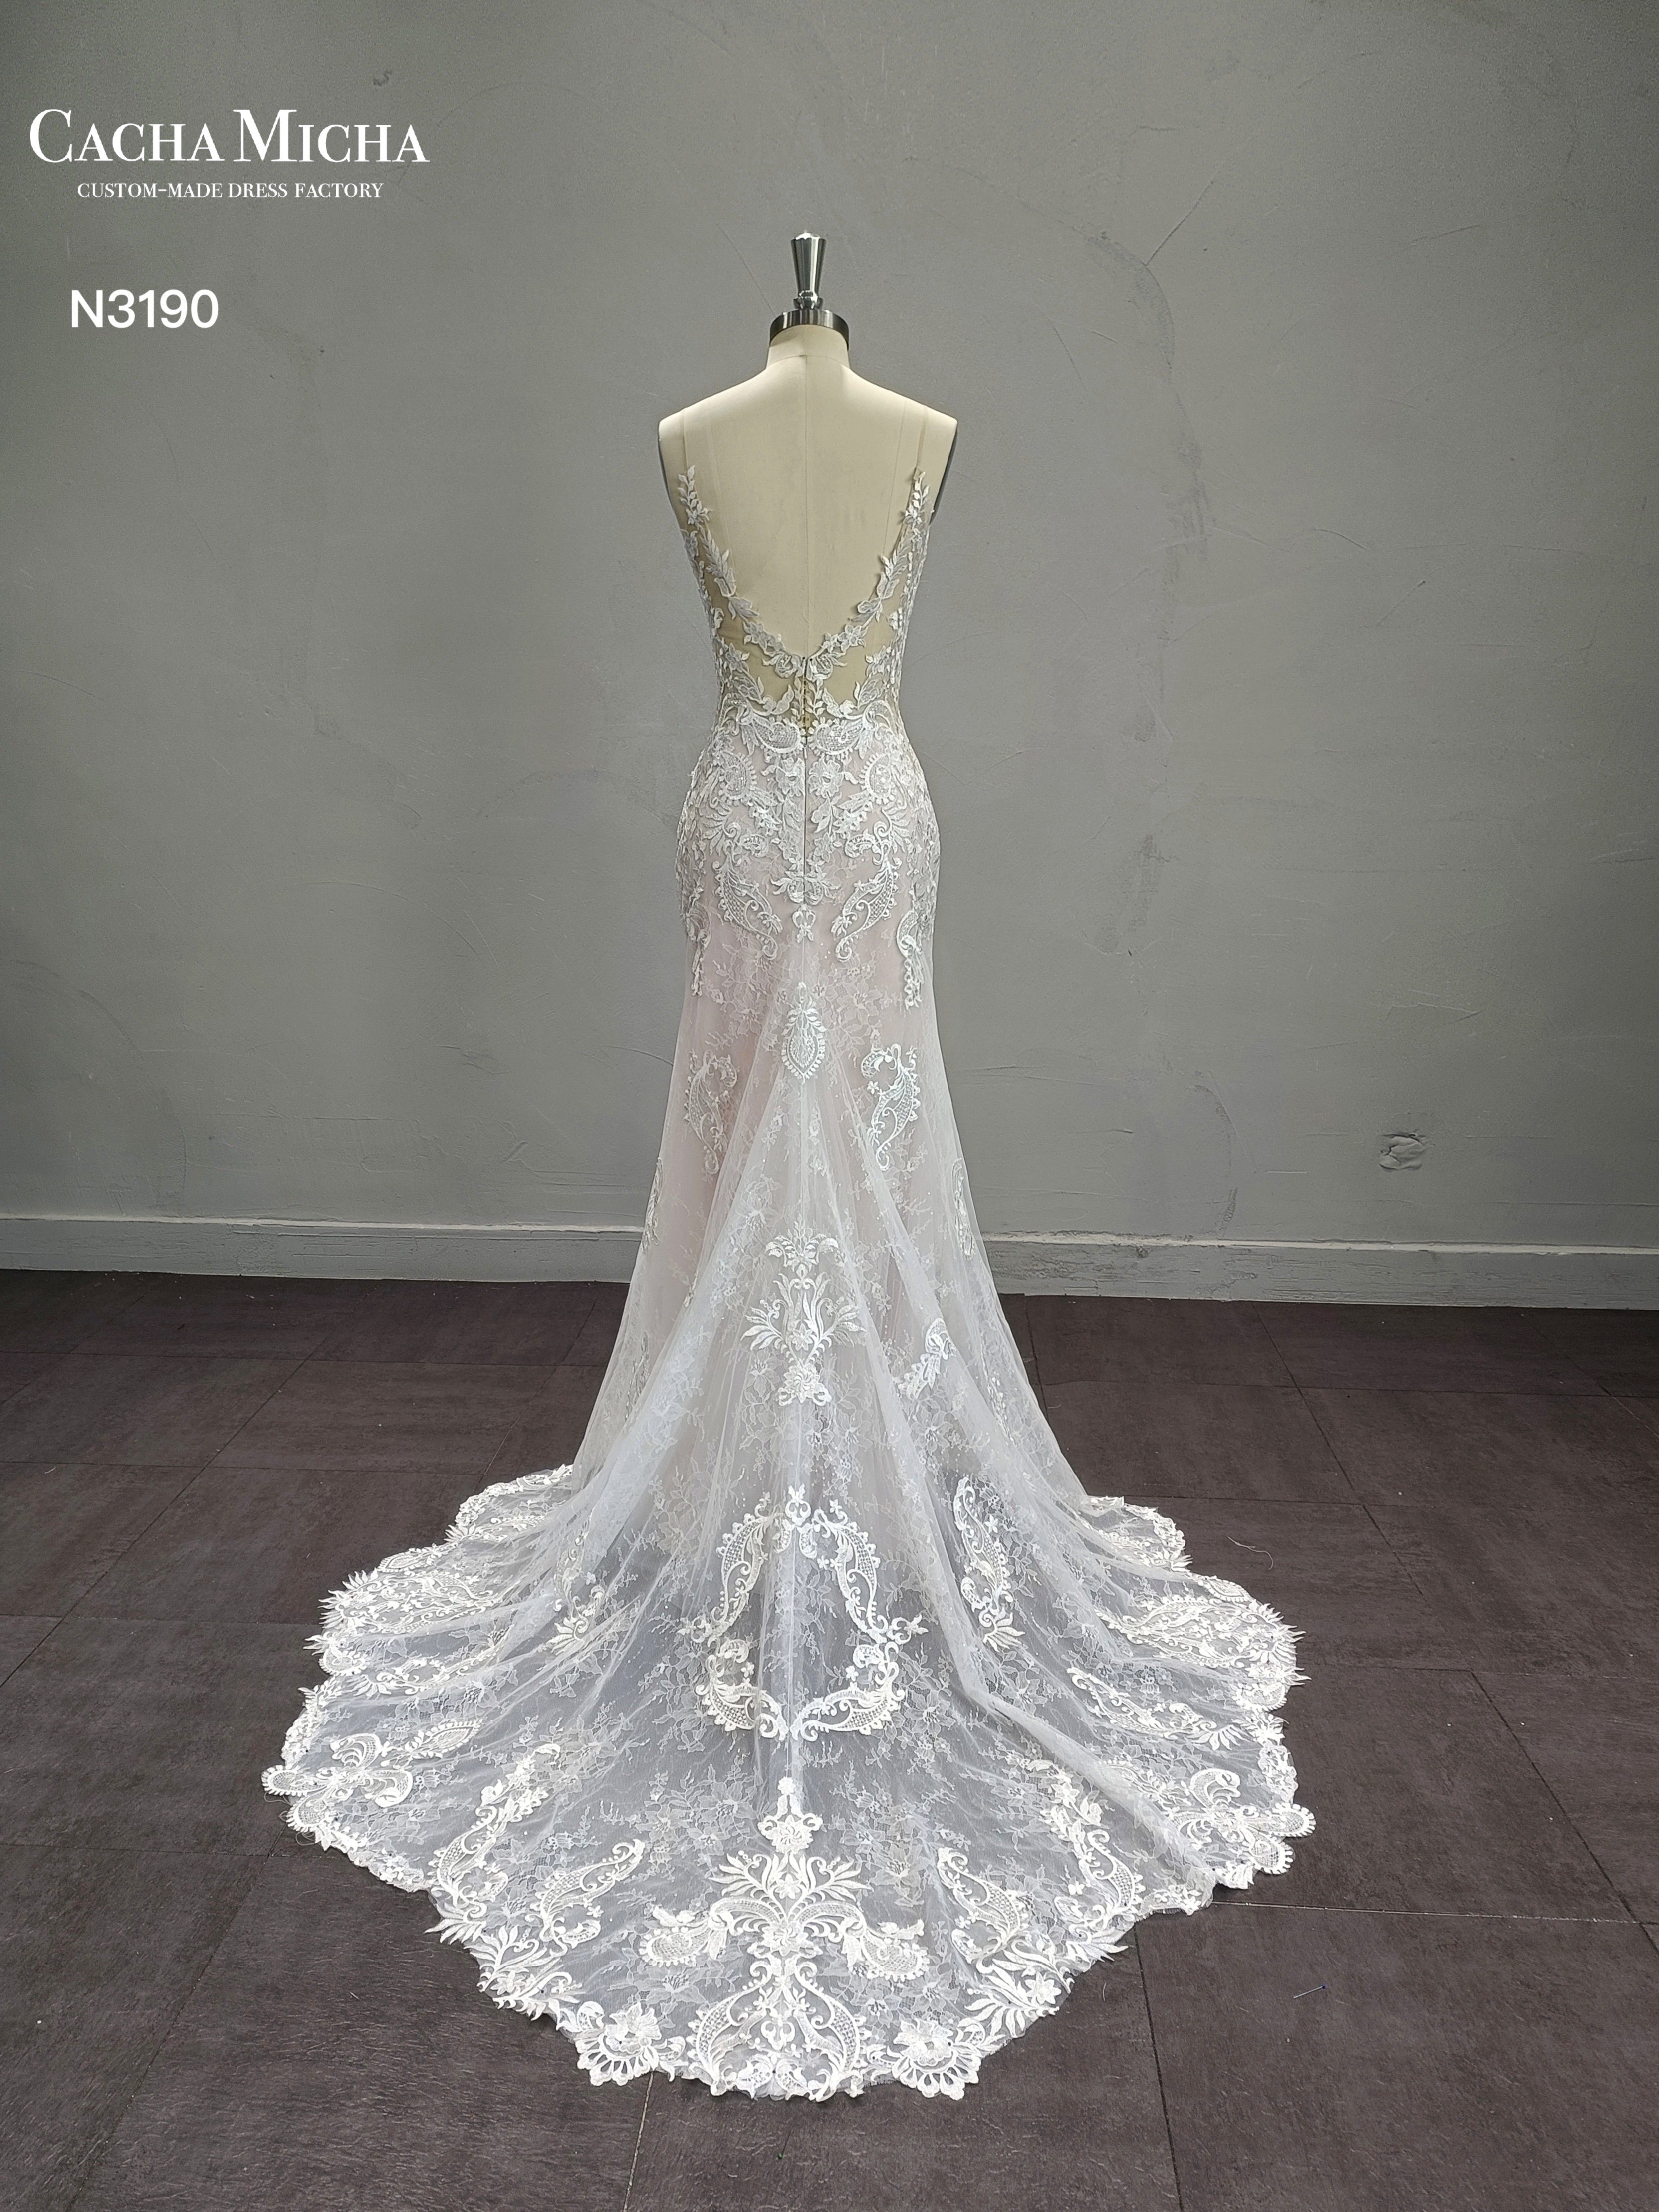 Blush Lining Lace Floral Train Mermaid Wedding Dress N3190